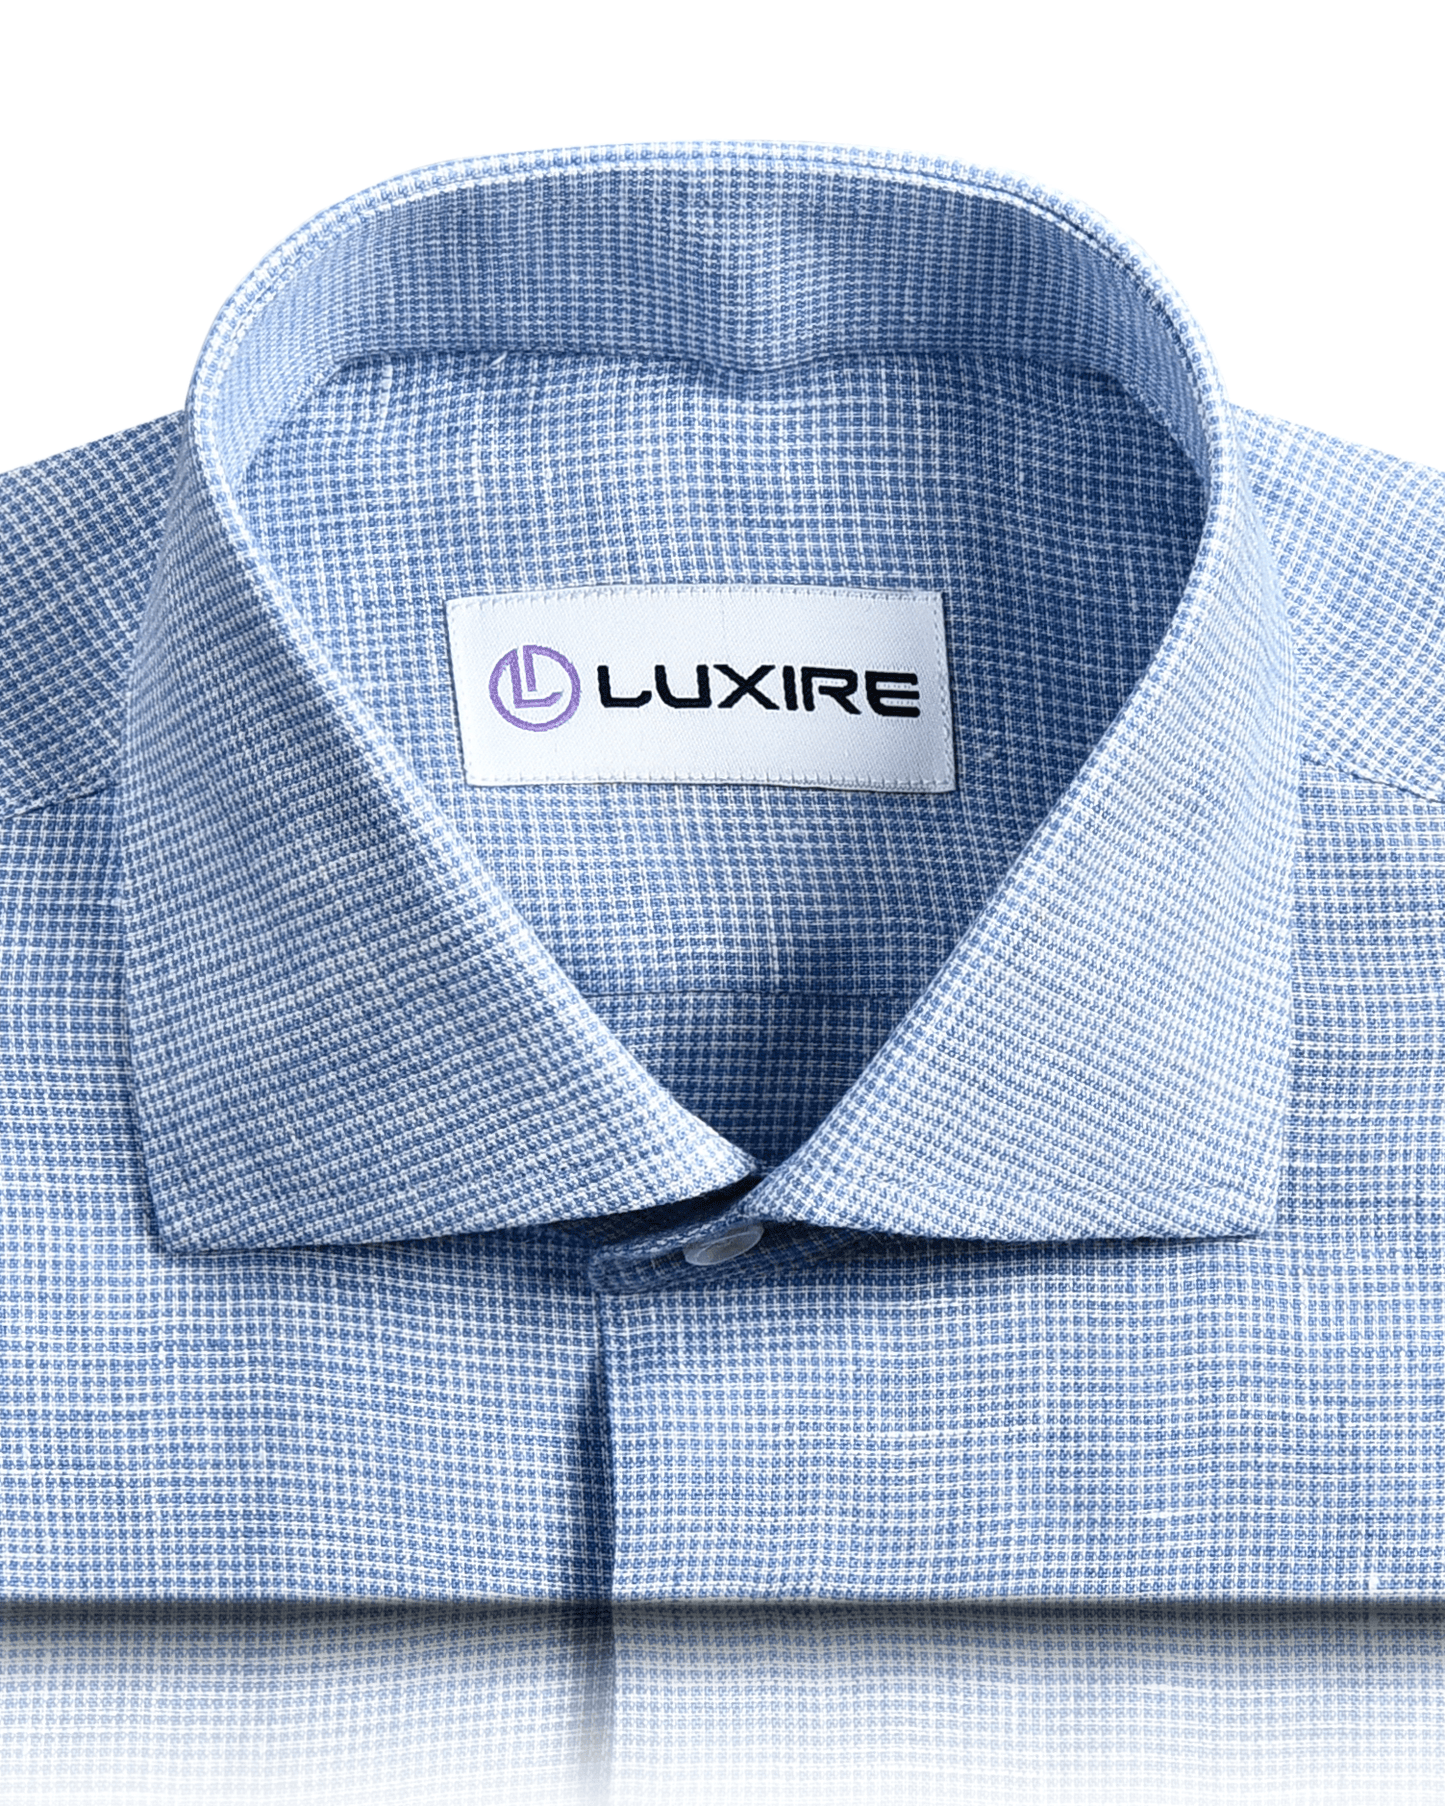 Collar of custom linen shirt for men in white blue micro houndstooth